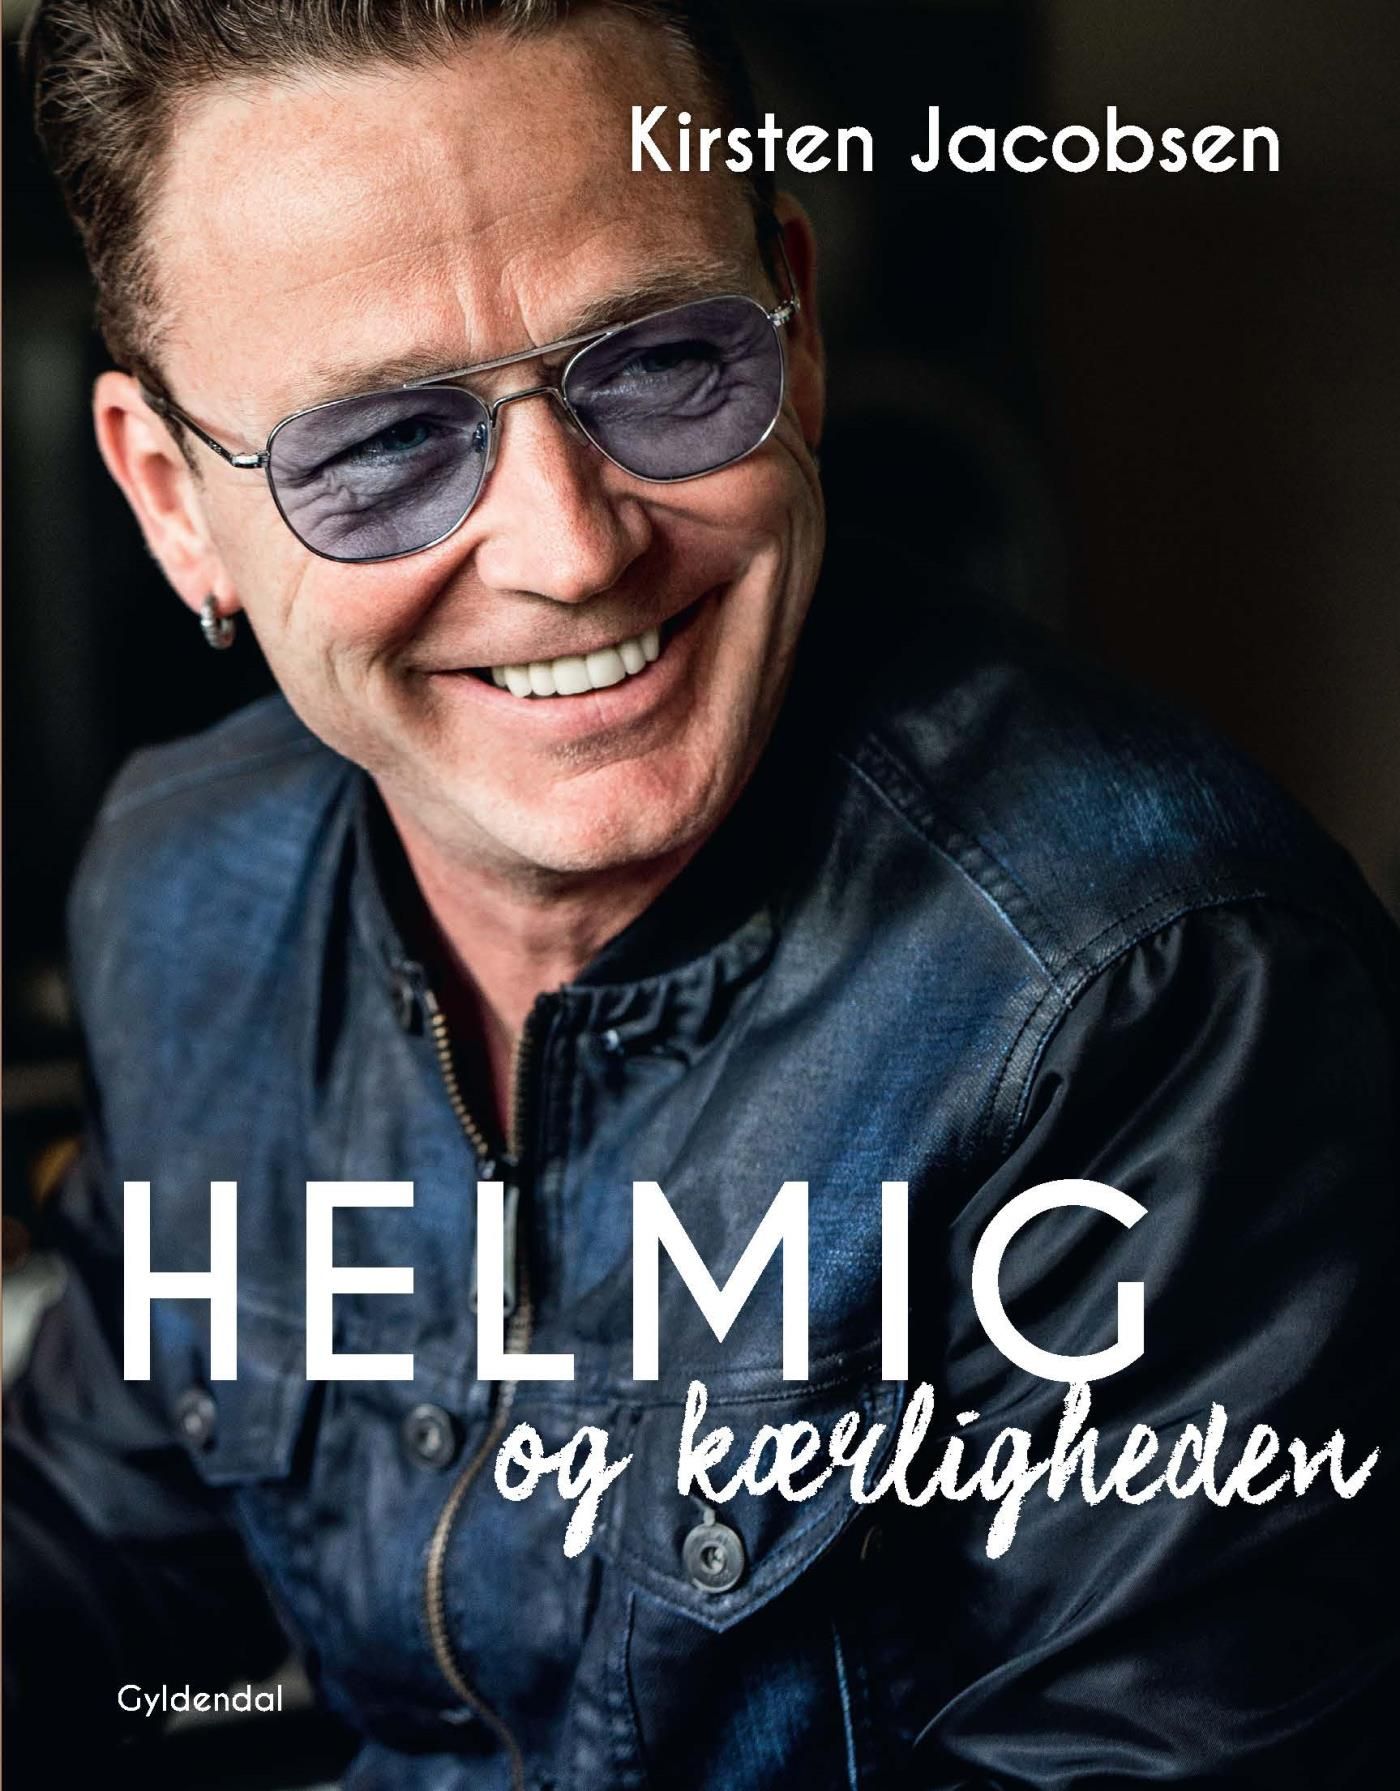 Helmig og kærligheden, e-bog af Thomas Helmig, Kirsten Jacobsen